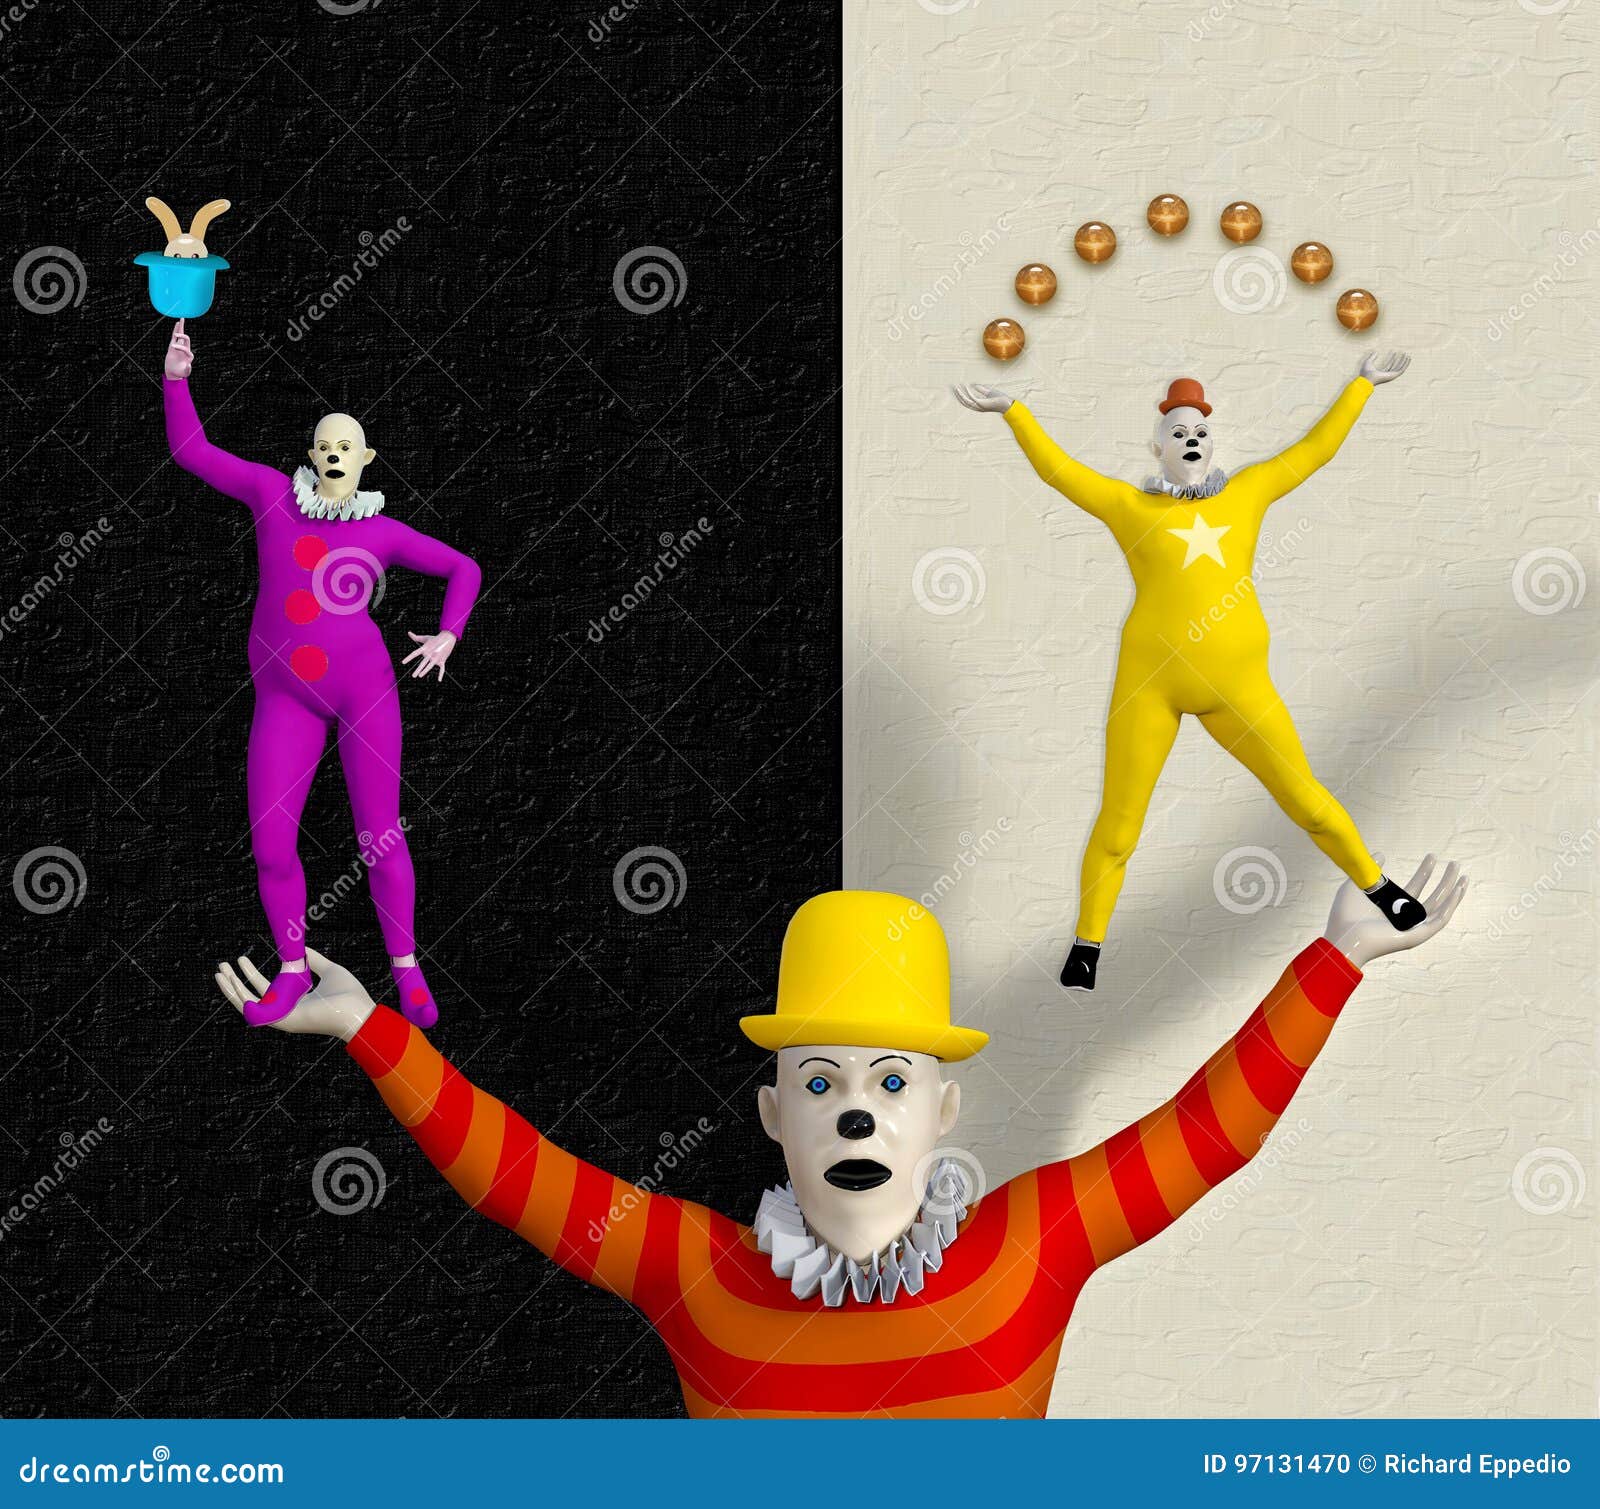 Клоуны акробаты. Клоун акробат. Елочные игрушки клоунов и акробатов.. Клоун акробат рисунок. Статуэтка "клоун" акробат.